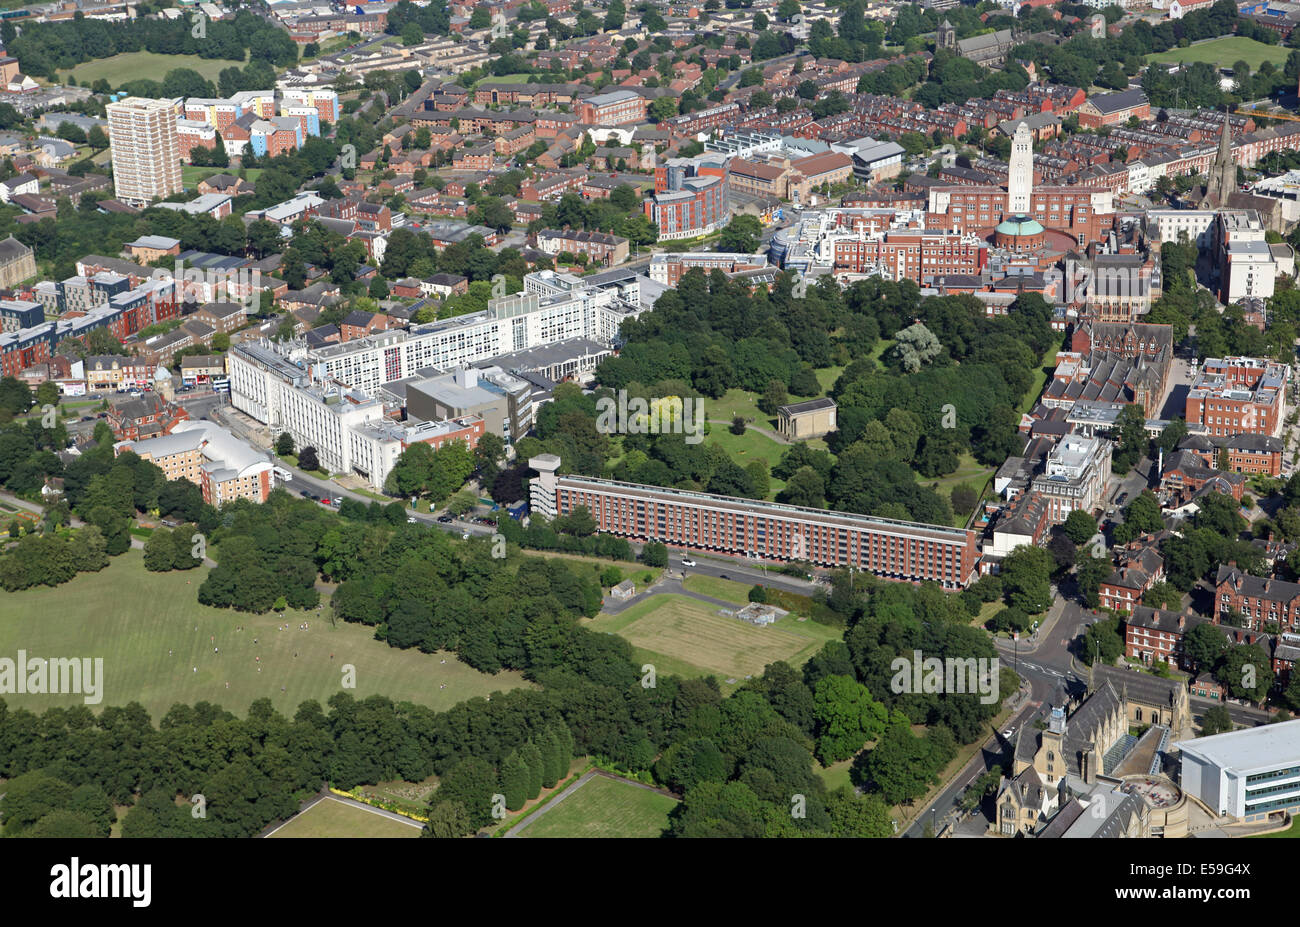 Vista aerea di St George's campi e Università di Leeds, con parte di Woodhouse Moor Park in primo piano Foto Stock